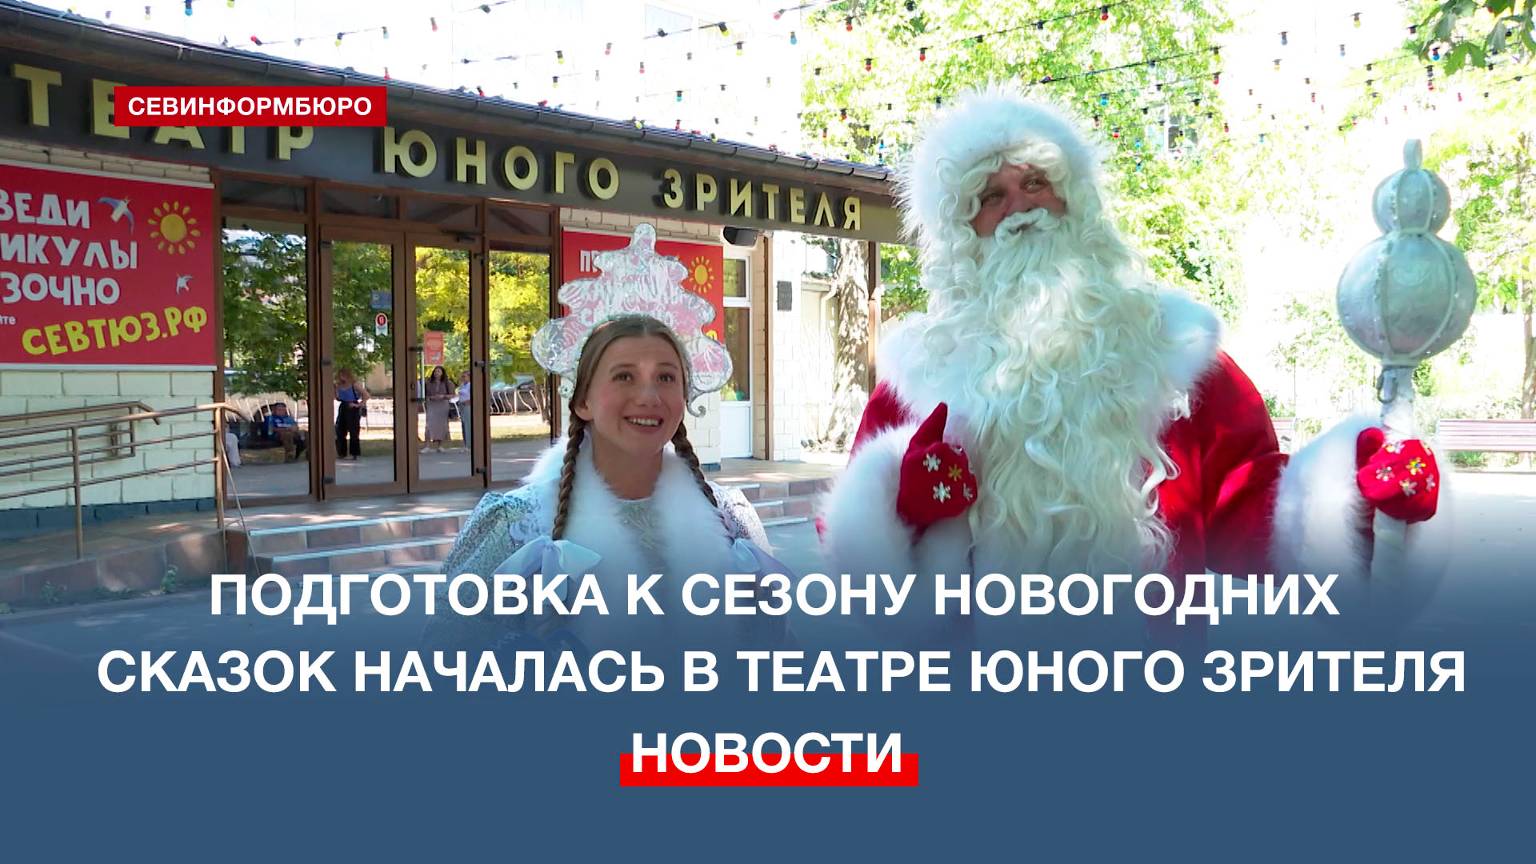 Дед Мороз и Снегурочка дали старт подготовке к новогодним спектаклям в Севастопольском ТЮЗе